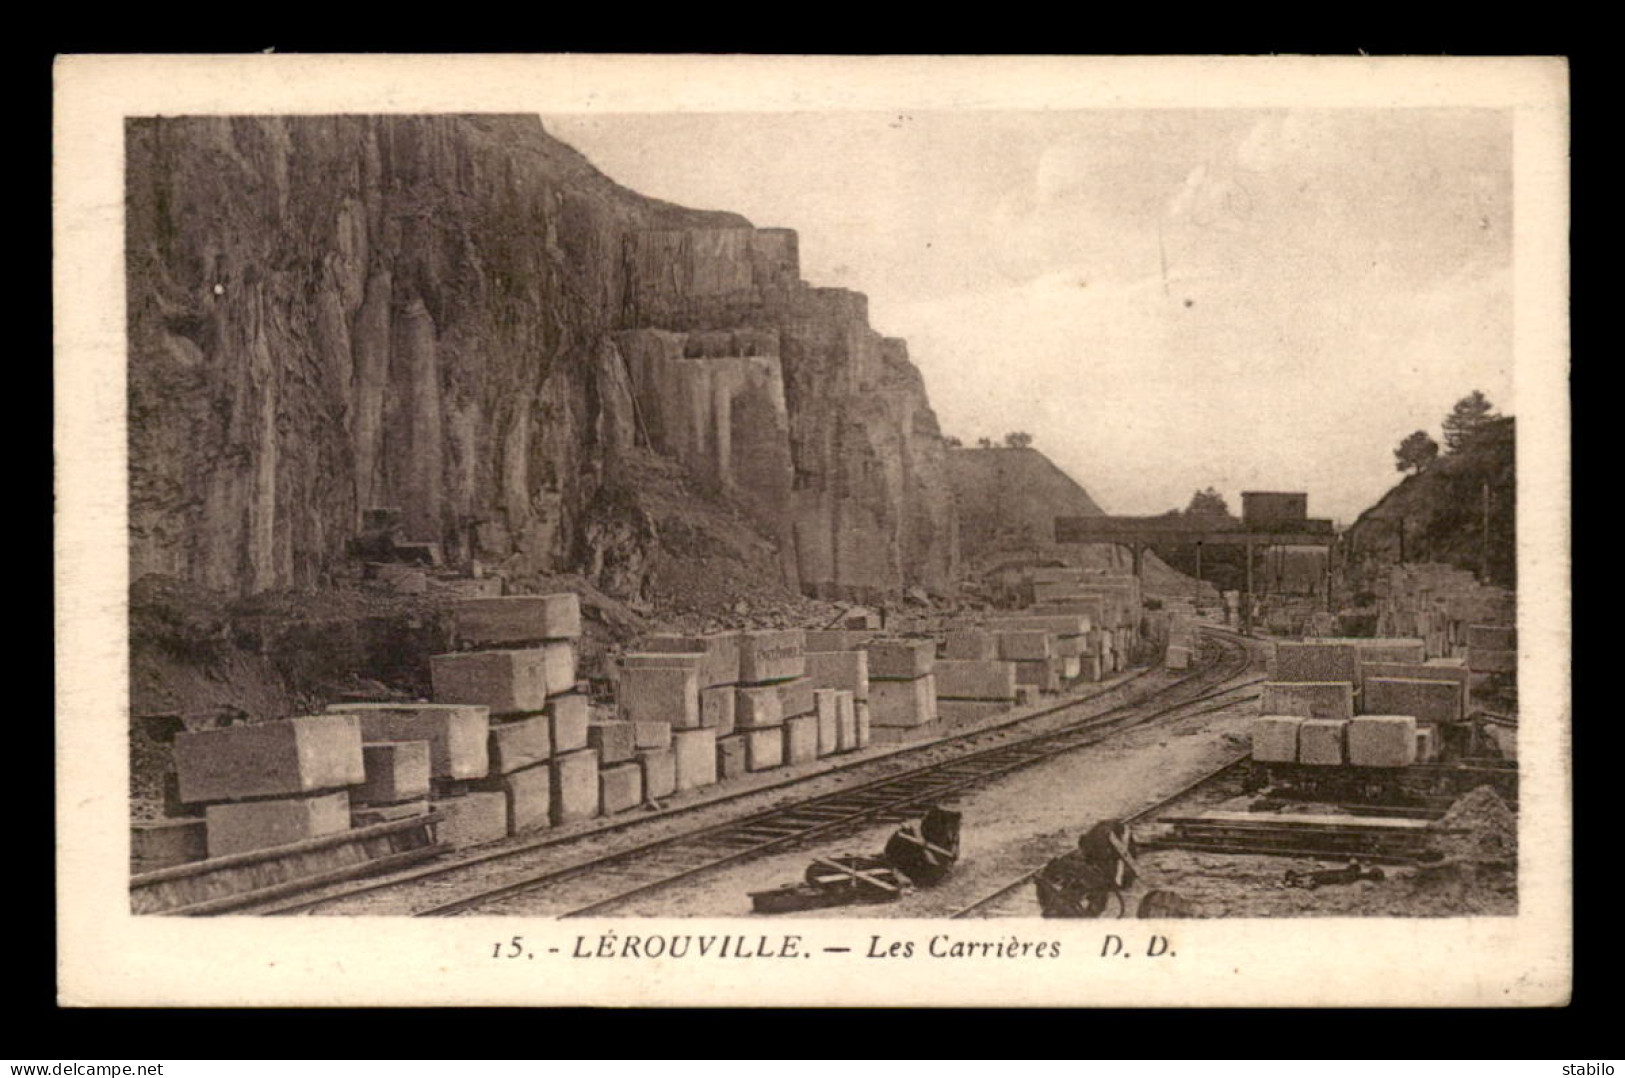 55 - LEROUVILLE - LES CARRIERES - EDITEUR D.D. - Lerouville